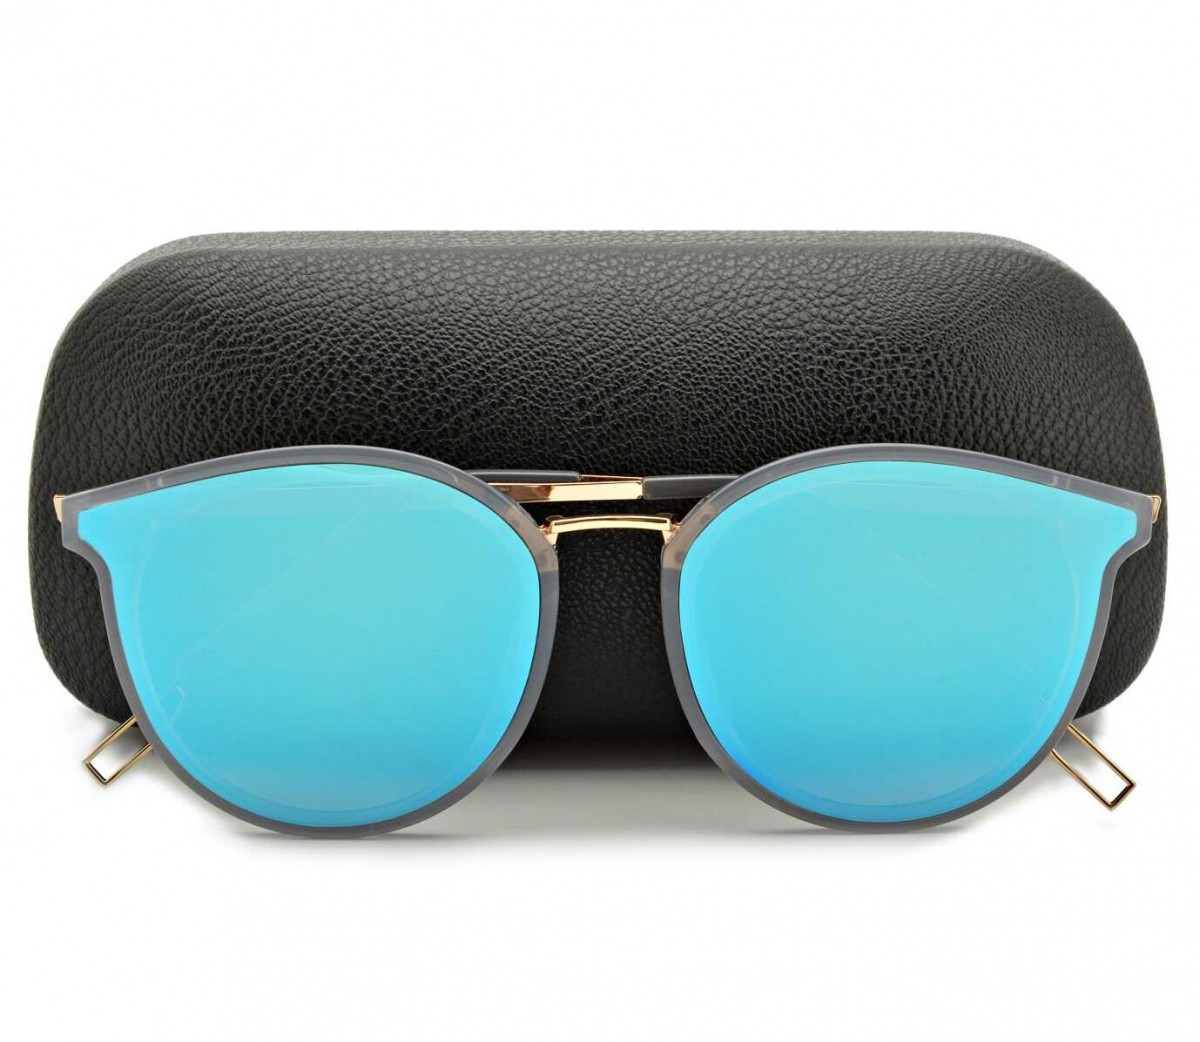 Okulary Kocie przeciwsłoneczne damskie Lustrzane niebieskie STD-52